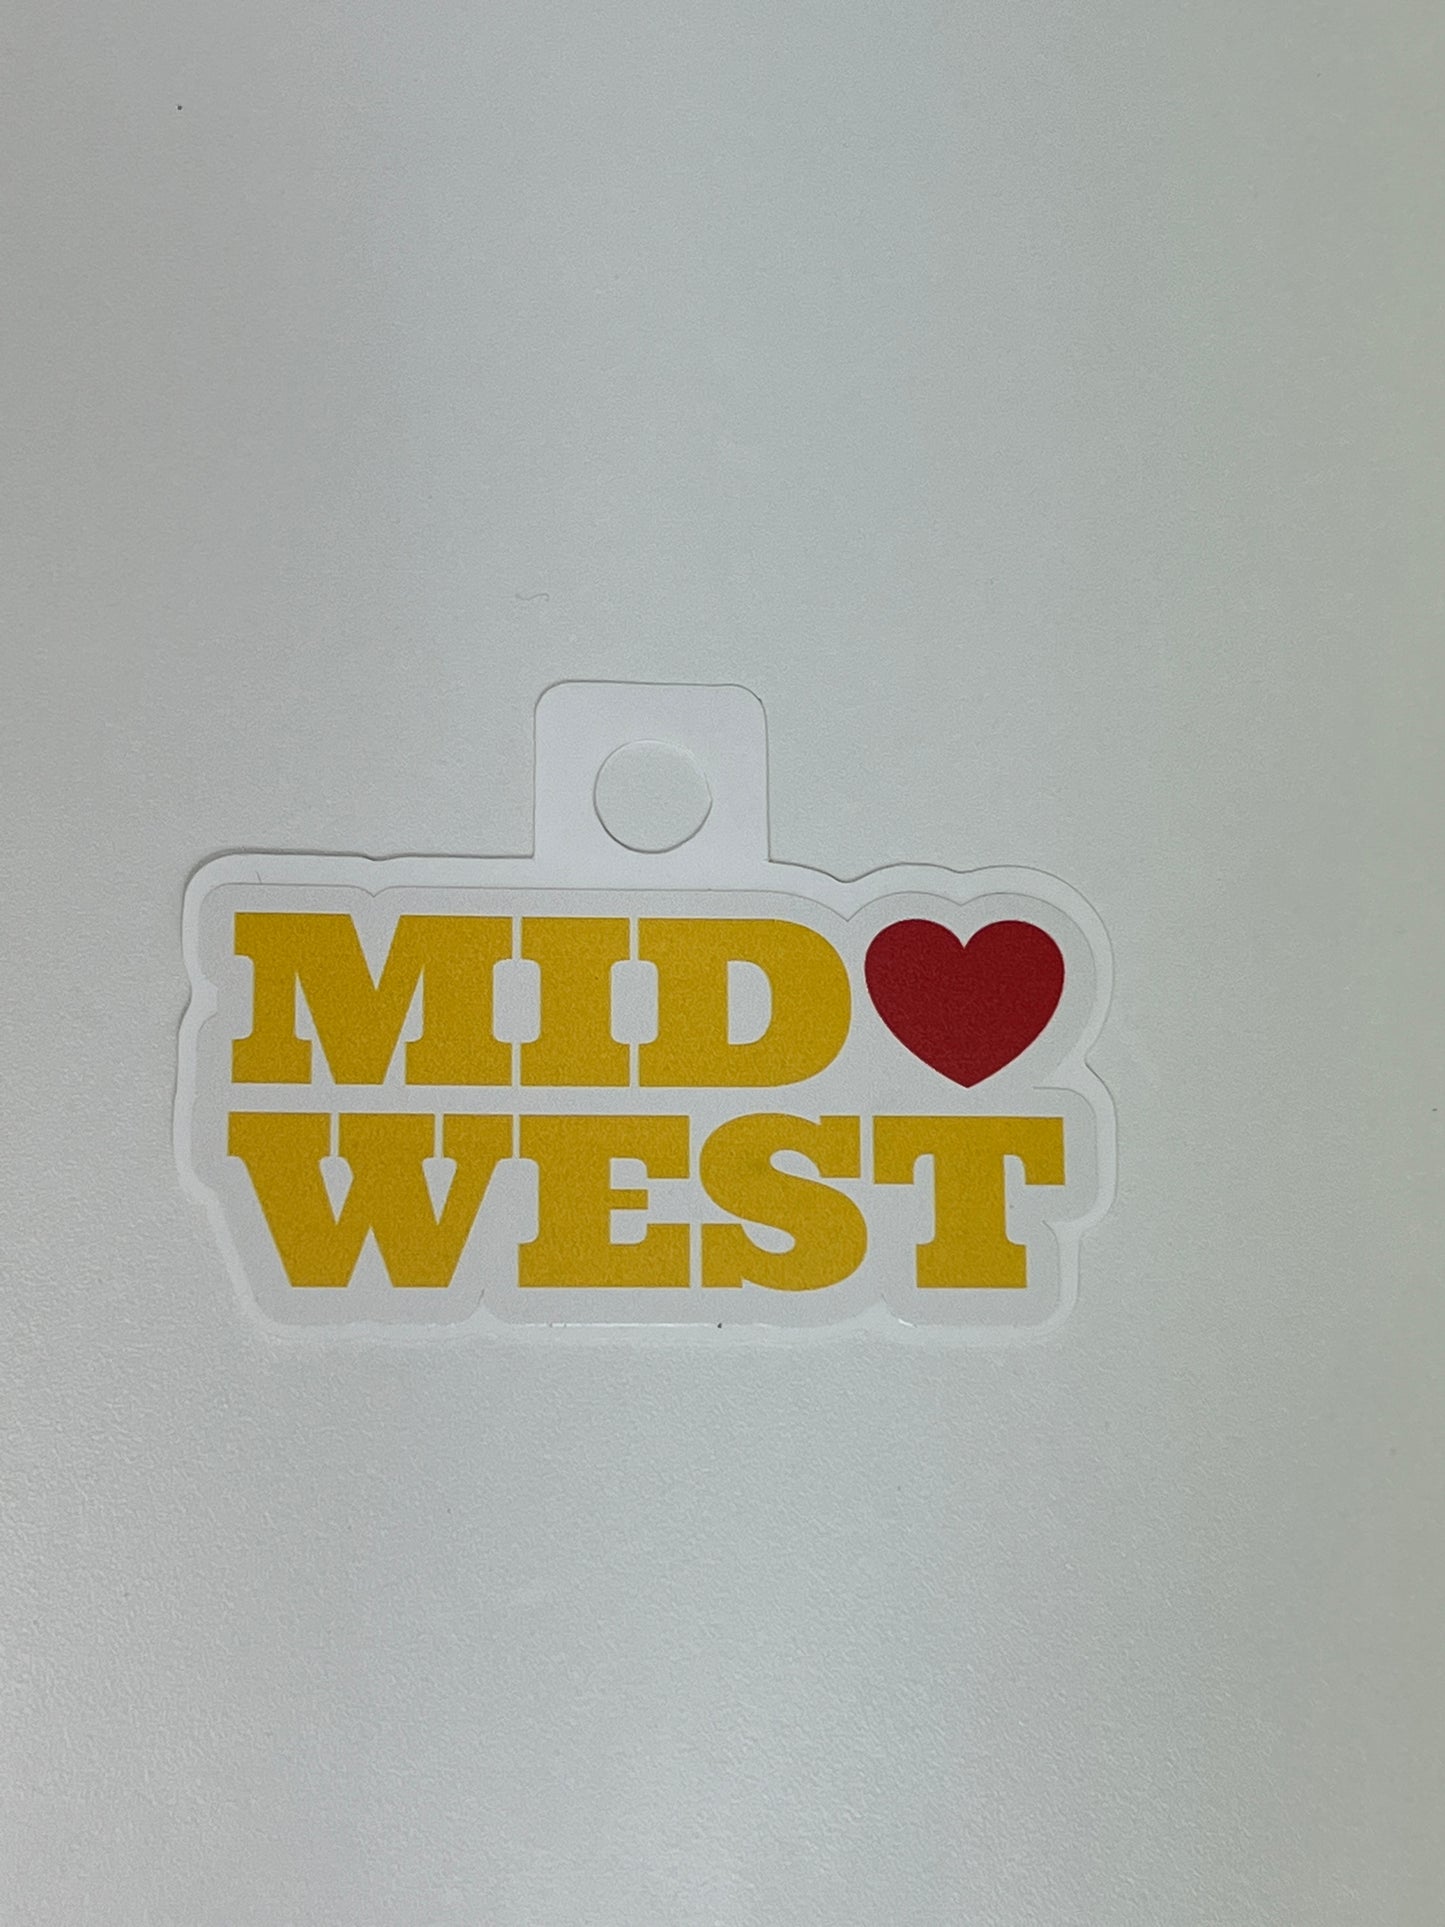 Midwest Sticker